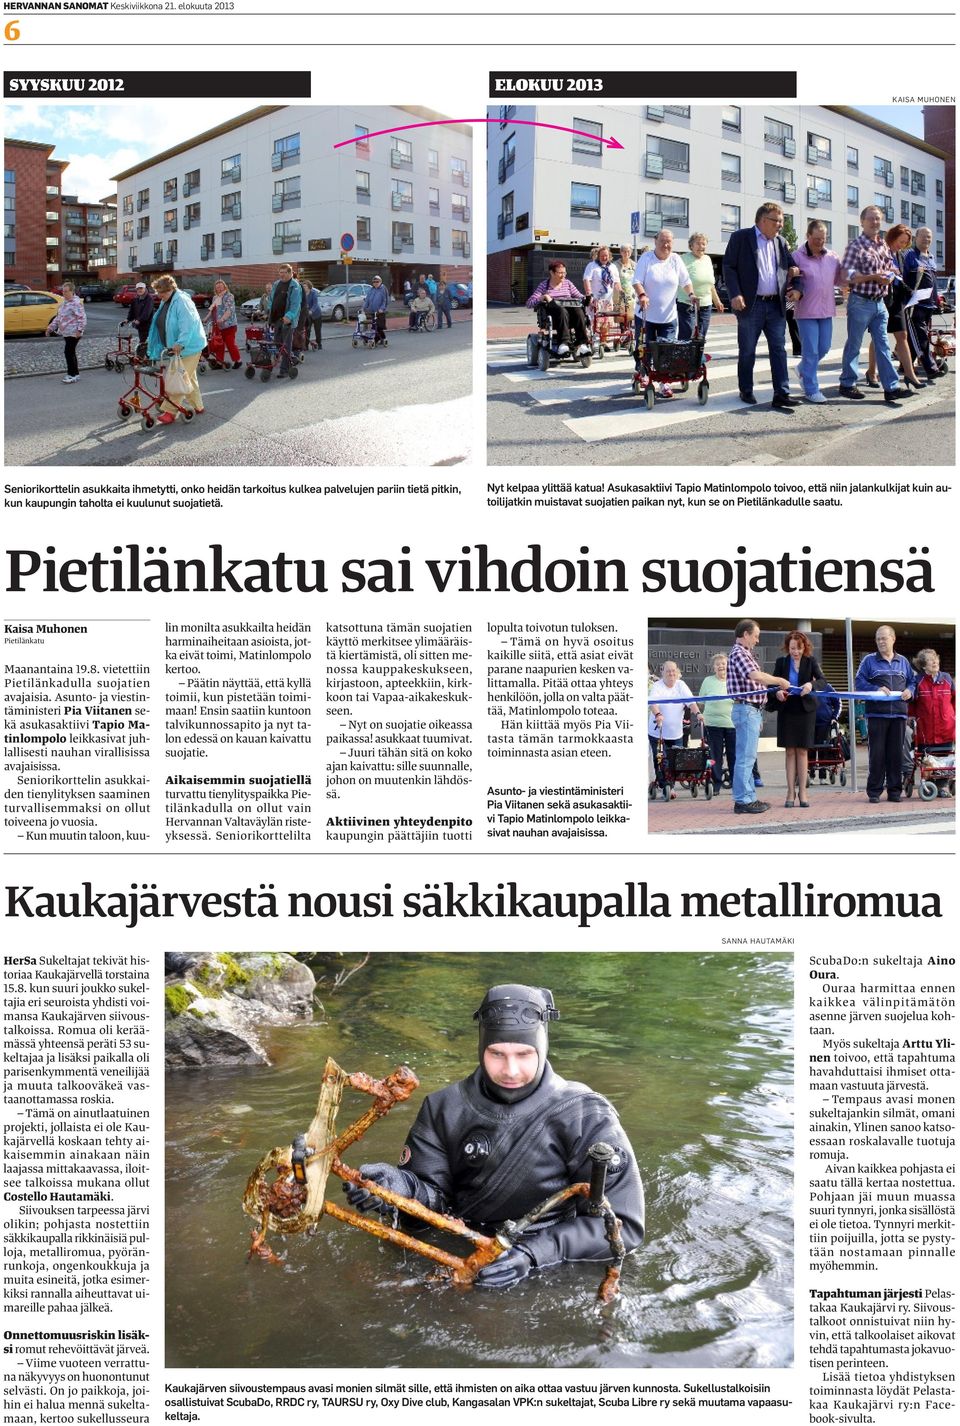 Nyt kelpaa ylittää katua! Asukasaktiivi Tapio Matinlompolo toivoo, että niin jalankulkijat kuin autoilijatkin muistavat suojatien paikan nyt, kun se on Pietilänkadulle saatu.